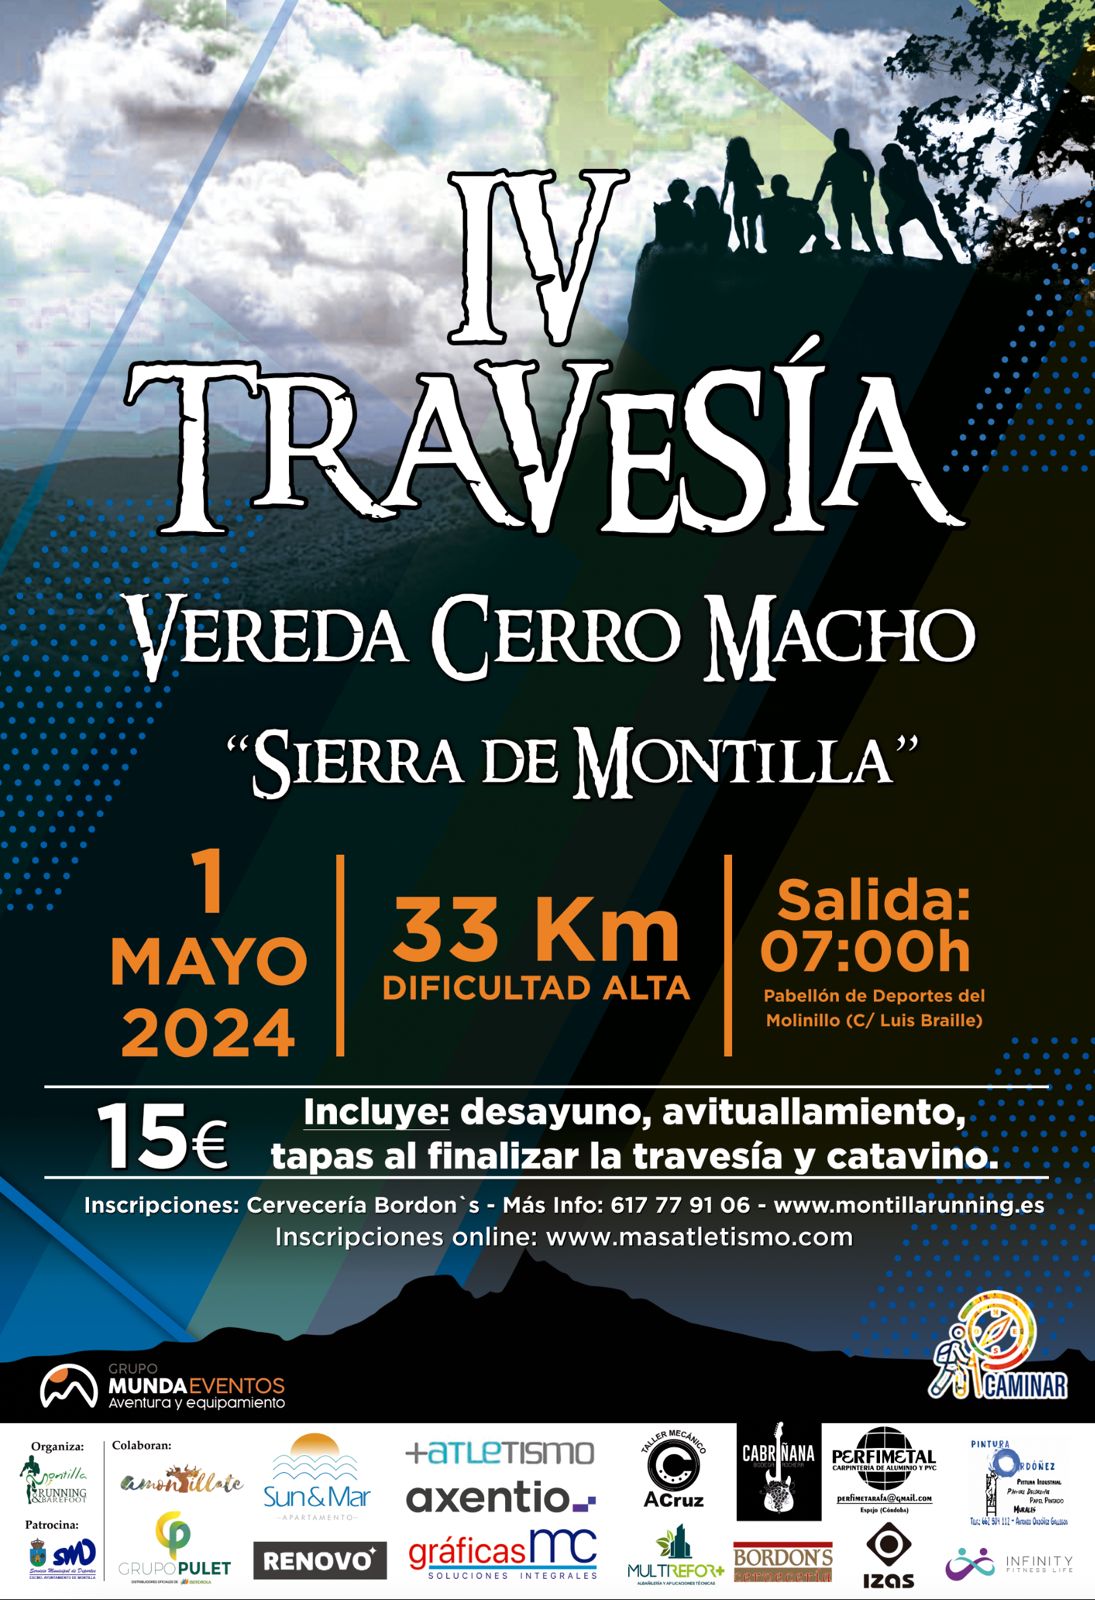 IV Travesía Vereda Cerro Macho Sierra de Montilla